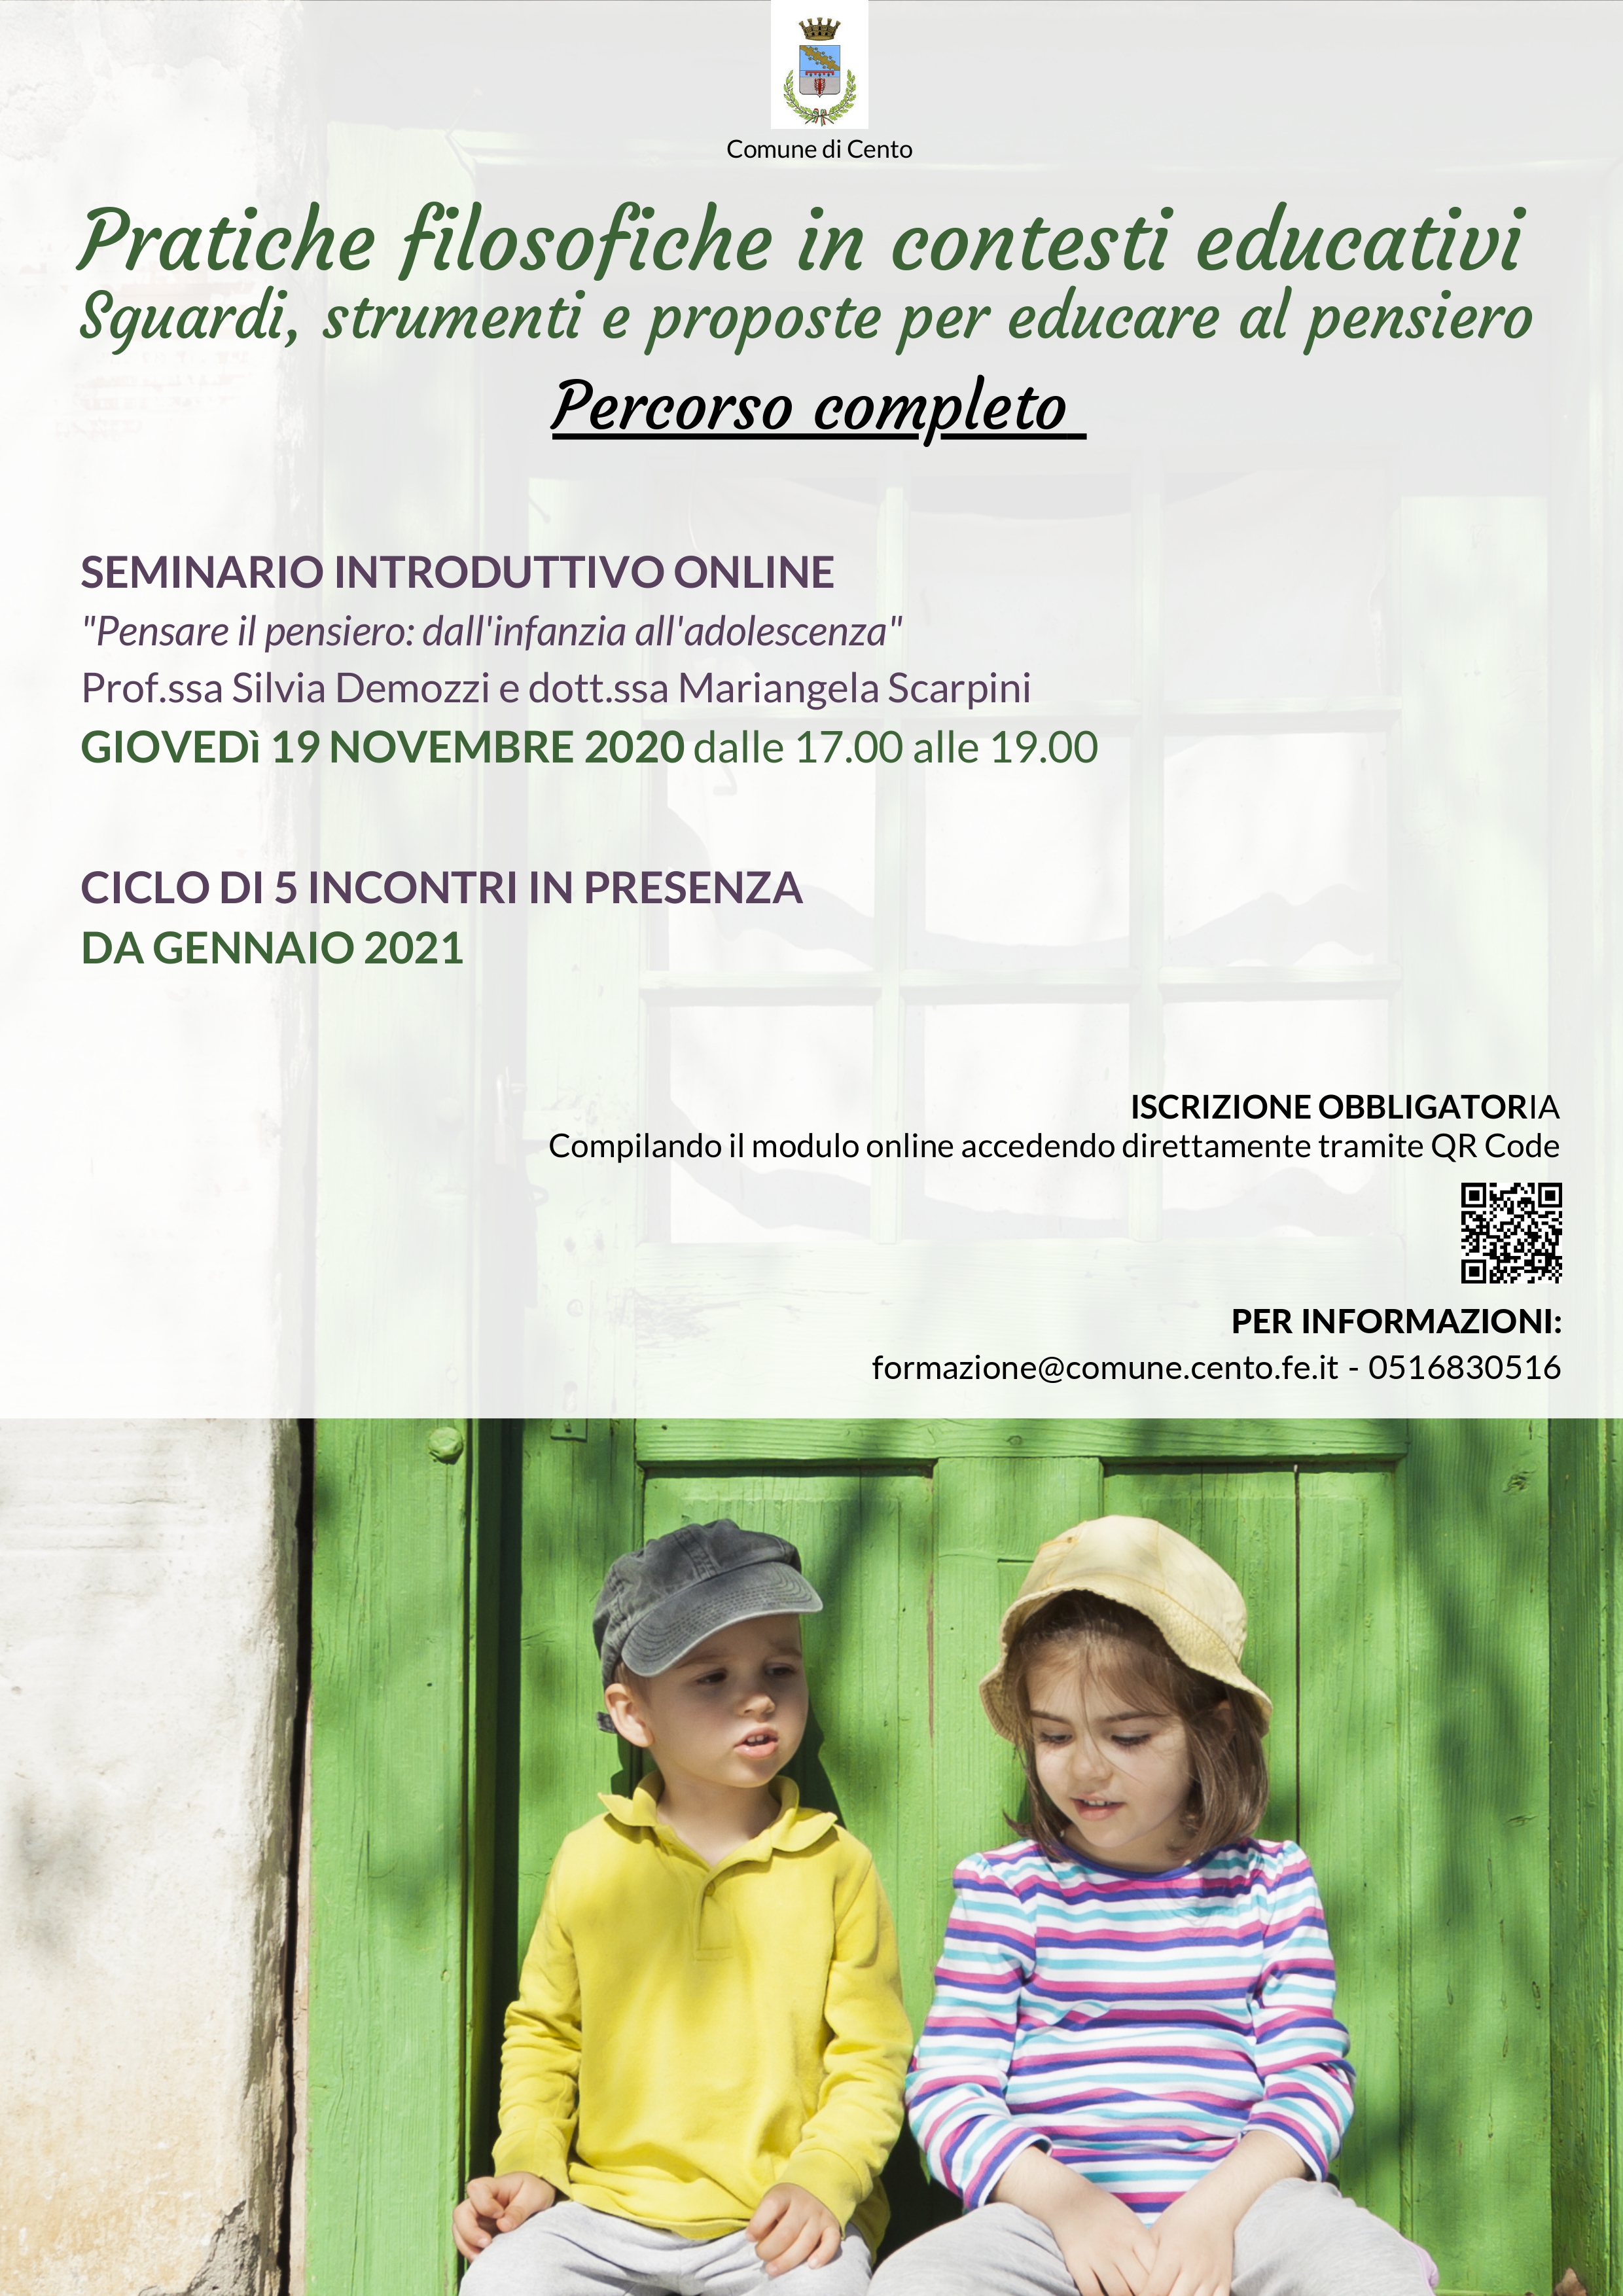 locandina descrizione seminario e fotografia di una bambina e un bambino vestiti colorati a sedere